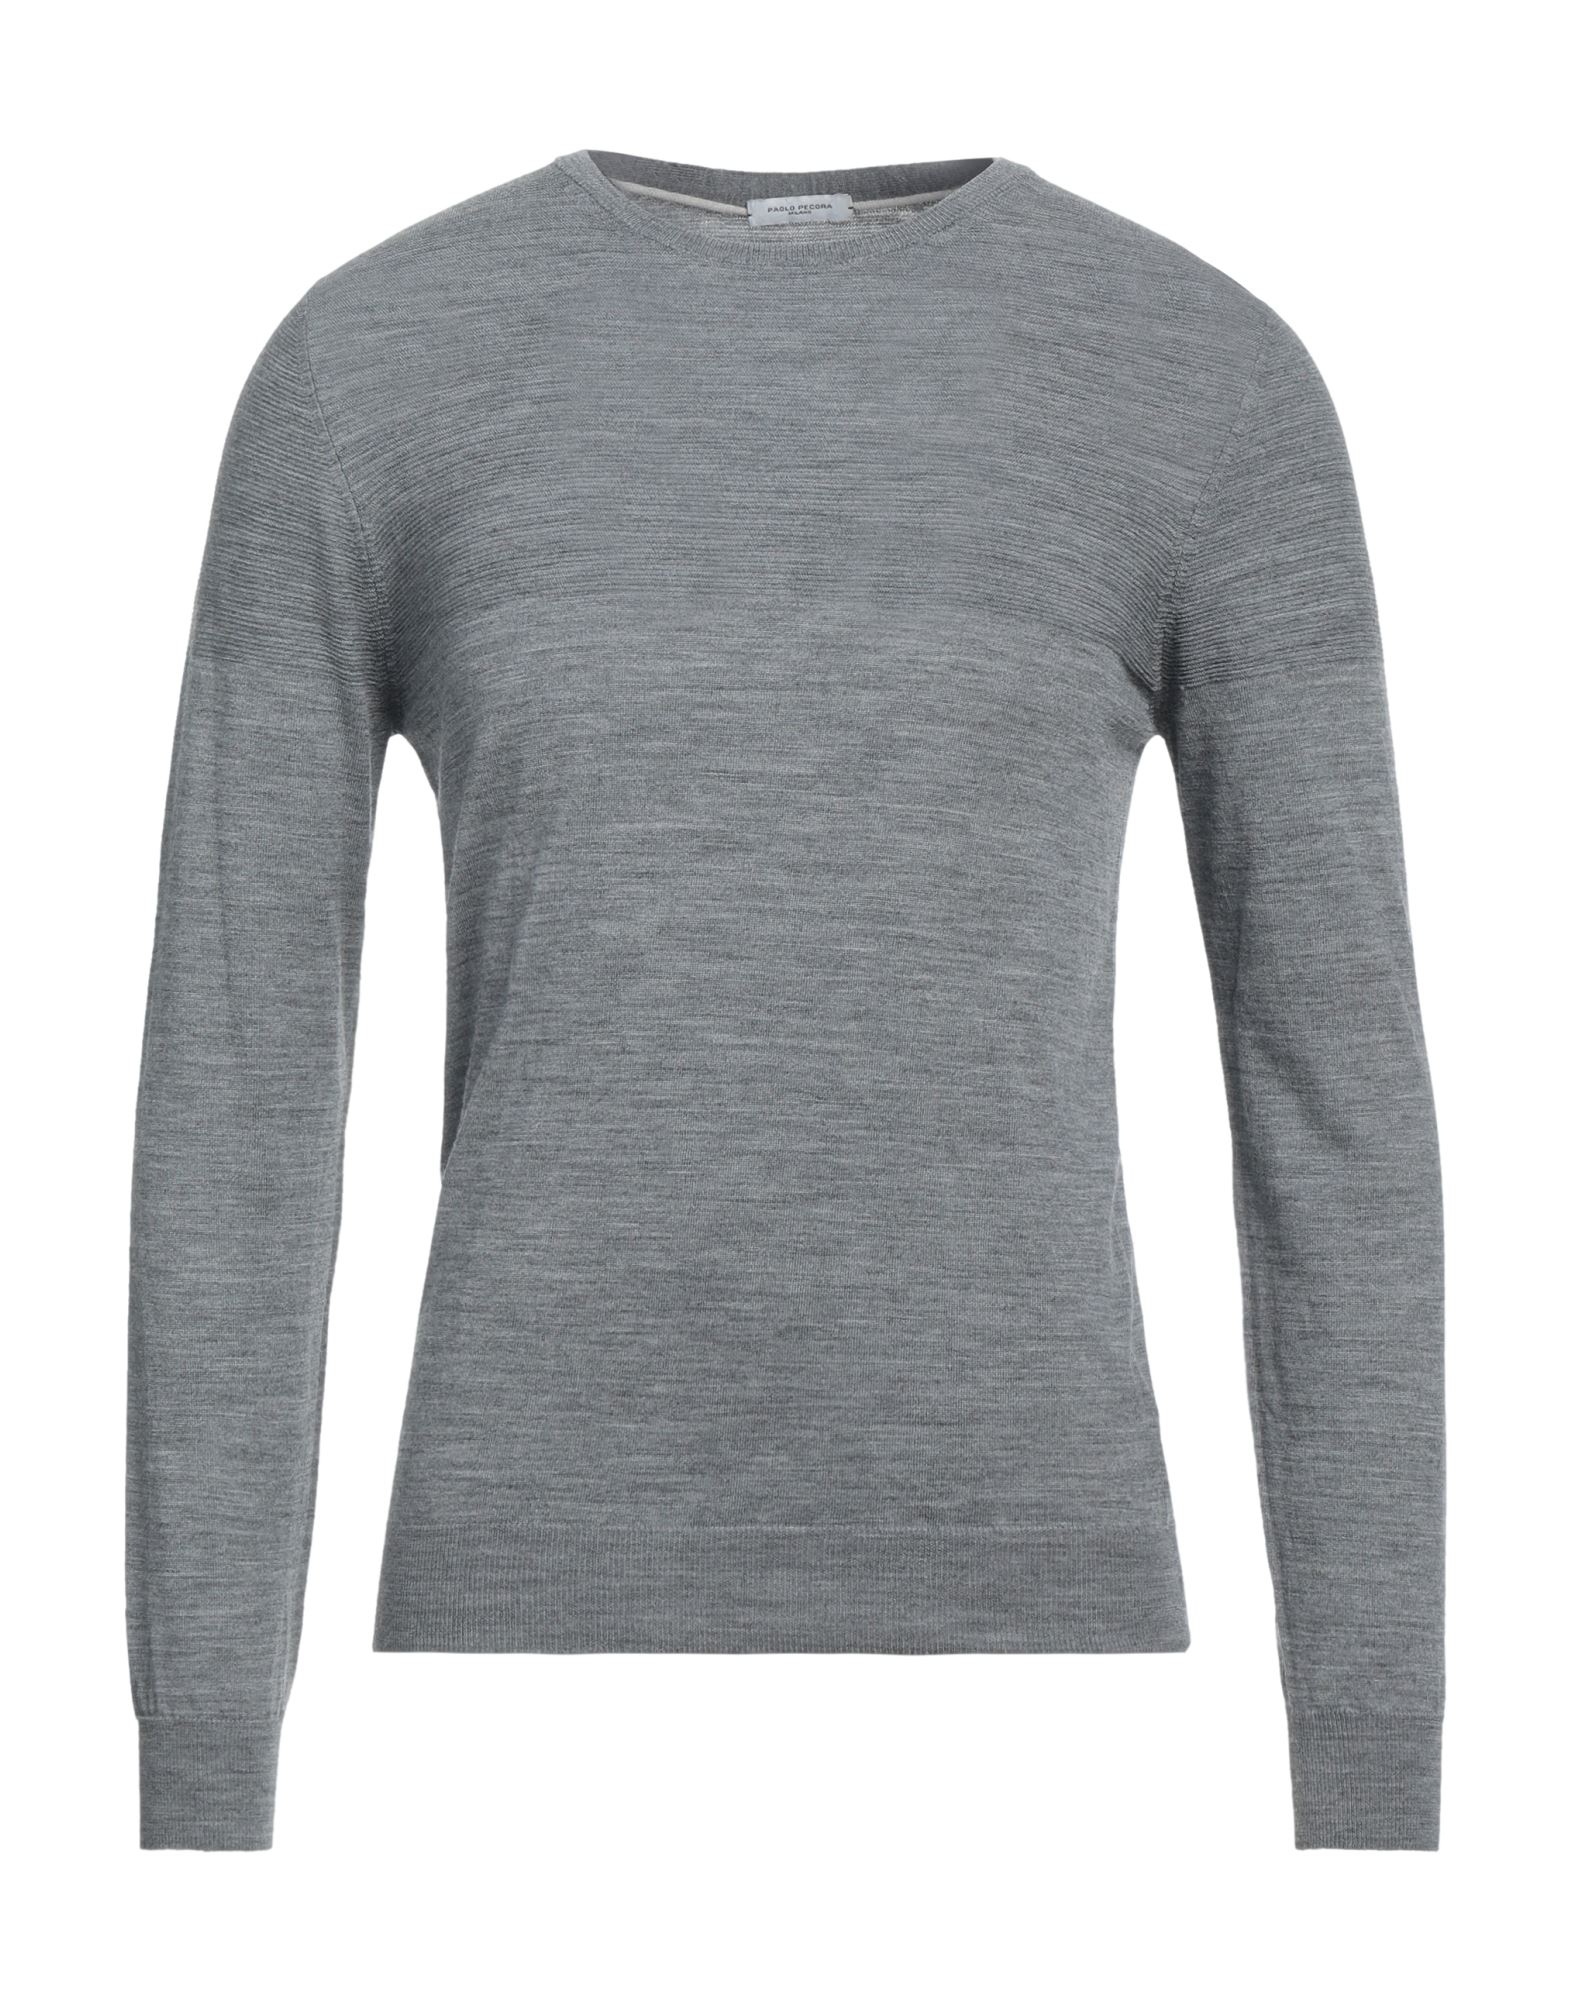 Paolo Pecora Man Sweater Grey Size L Wool